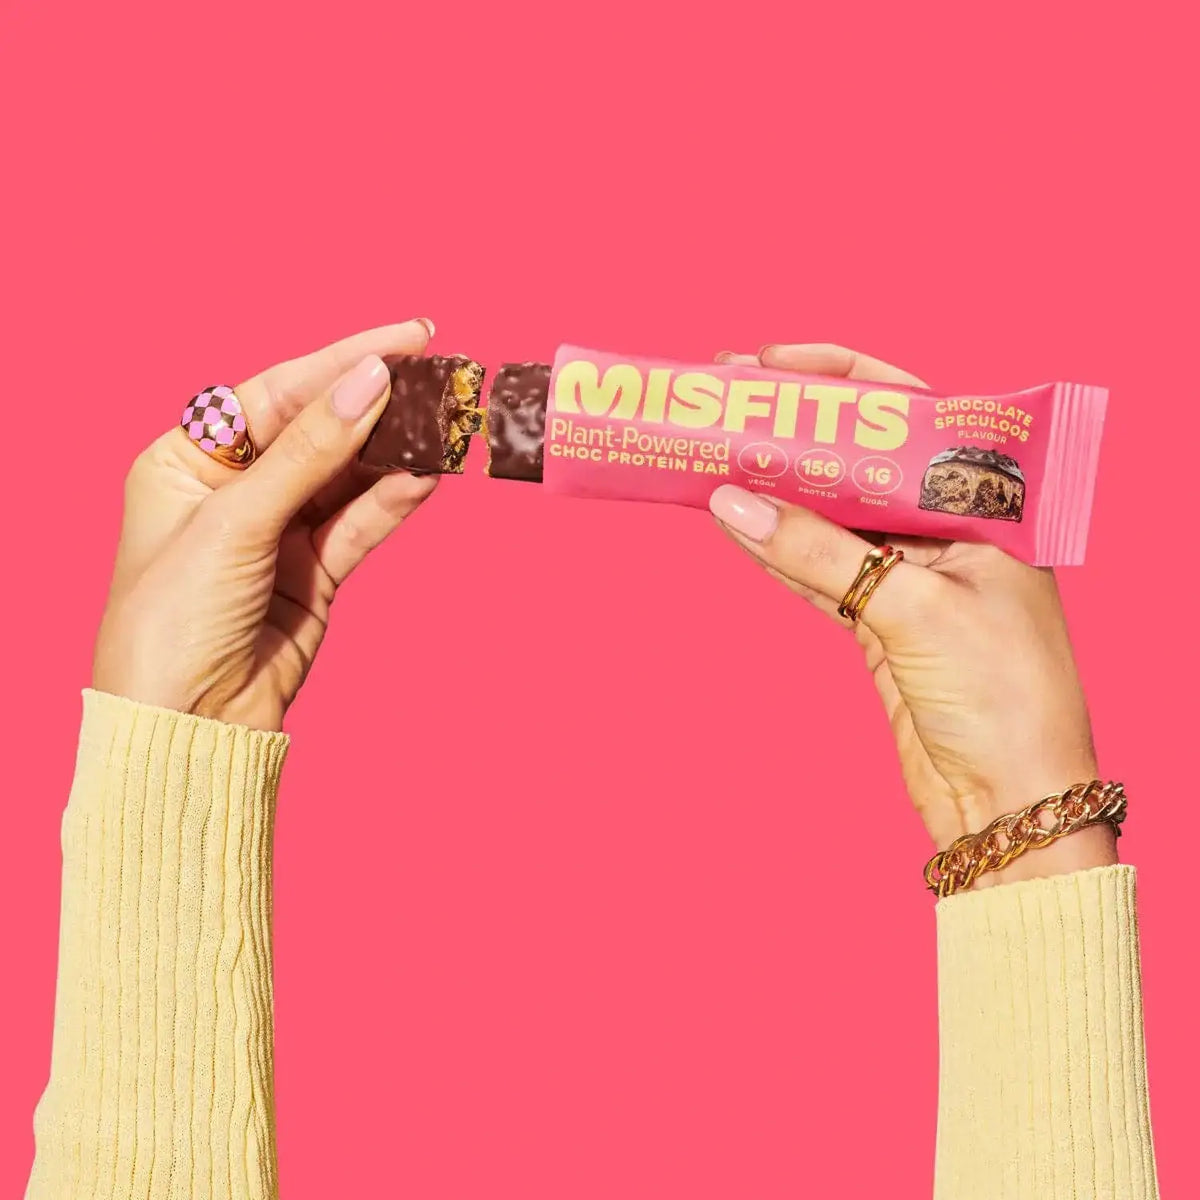 Misfits Misfits Vegan Protein Bar 12 x 45 g Milk Chocolate Speculoos kaufen bei HighPowered.ch